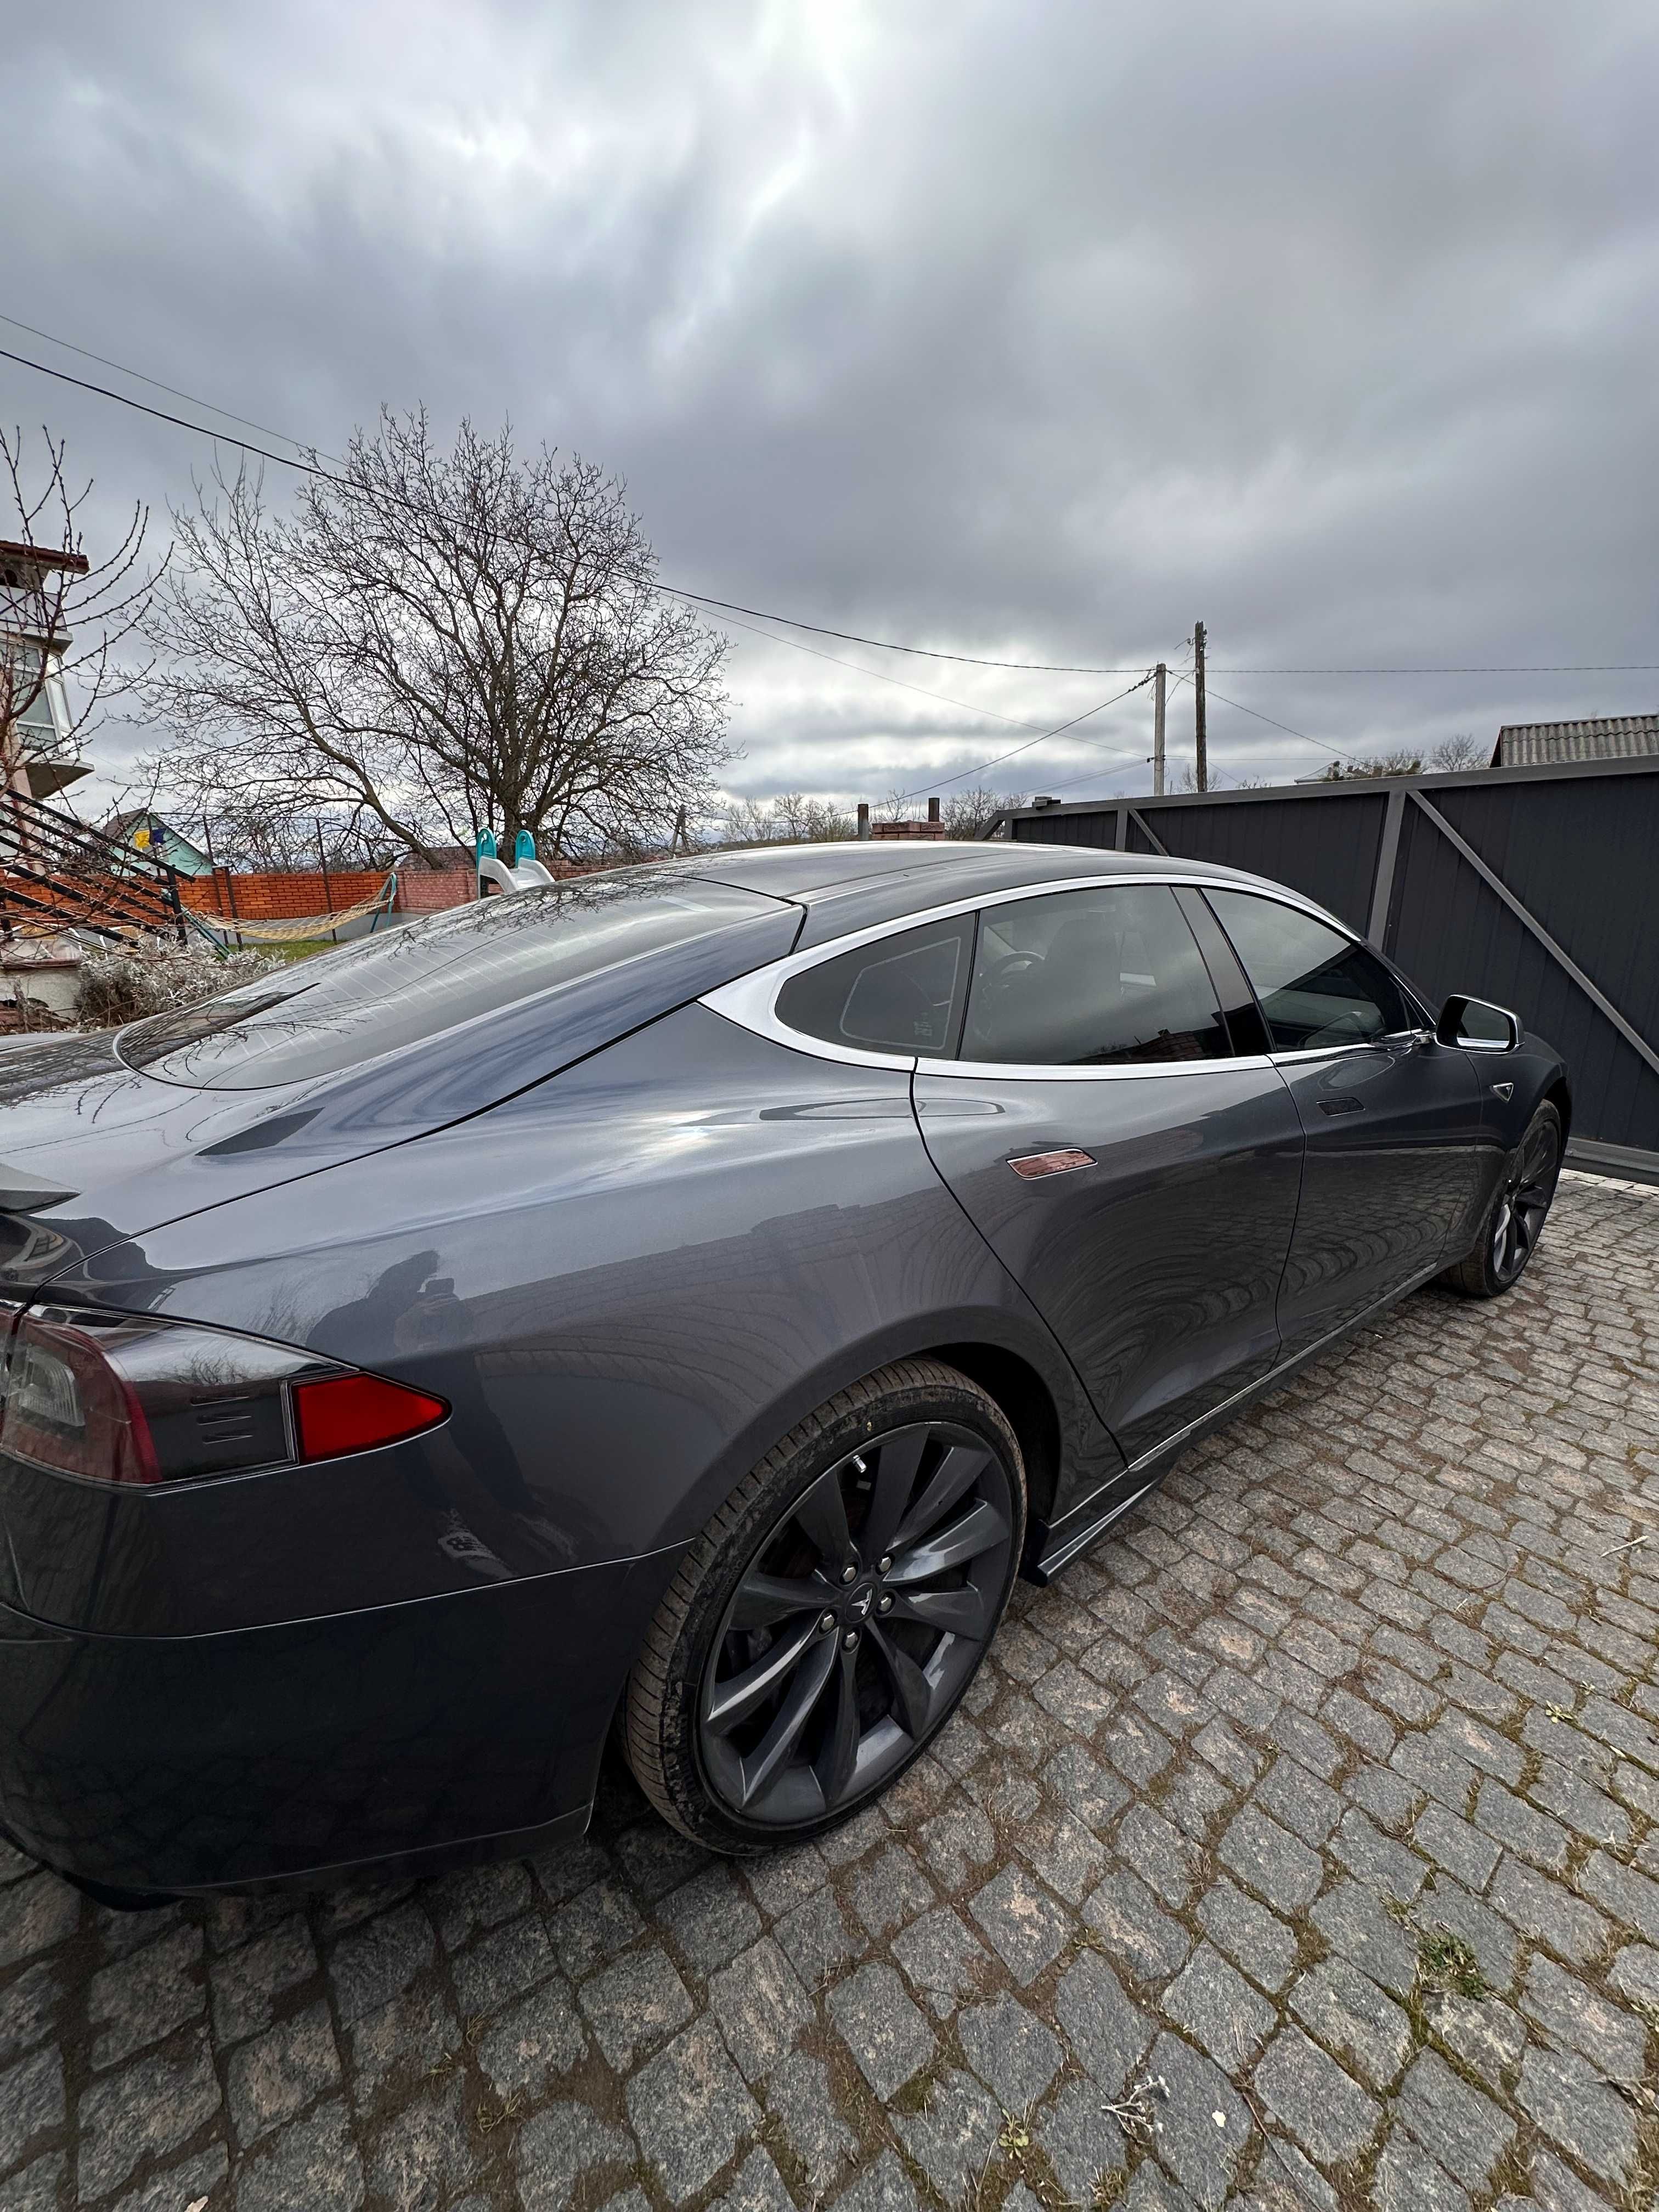 Автомобіль (Автомобиль Тесла) Tesla Model S 2013 P85+